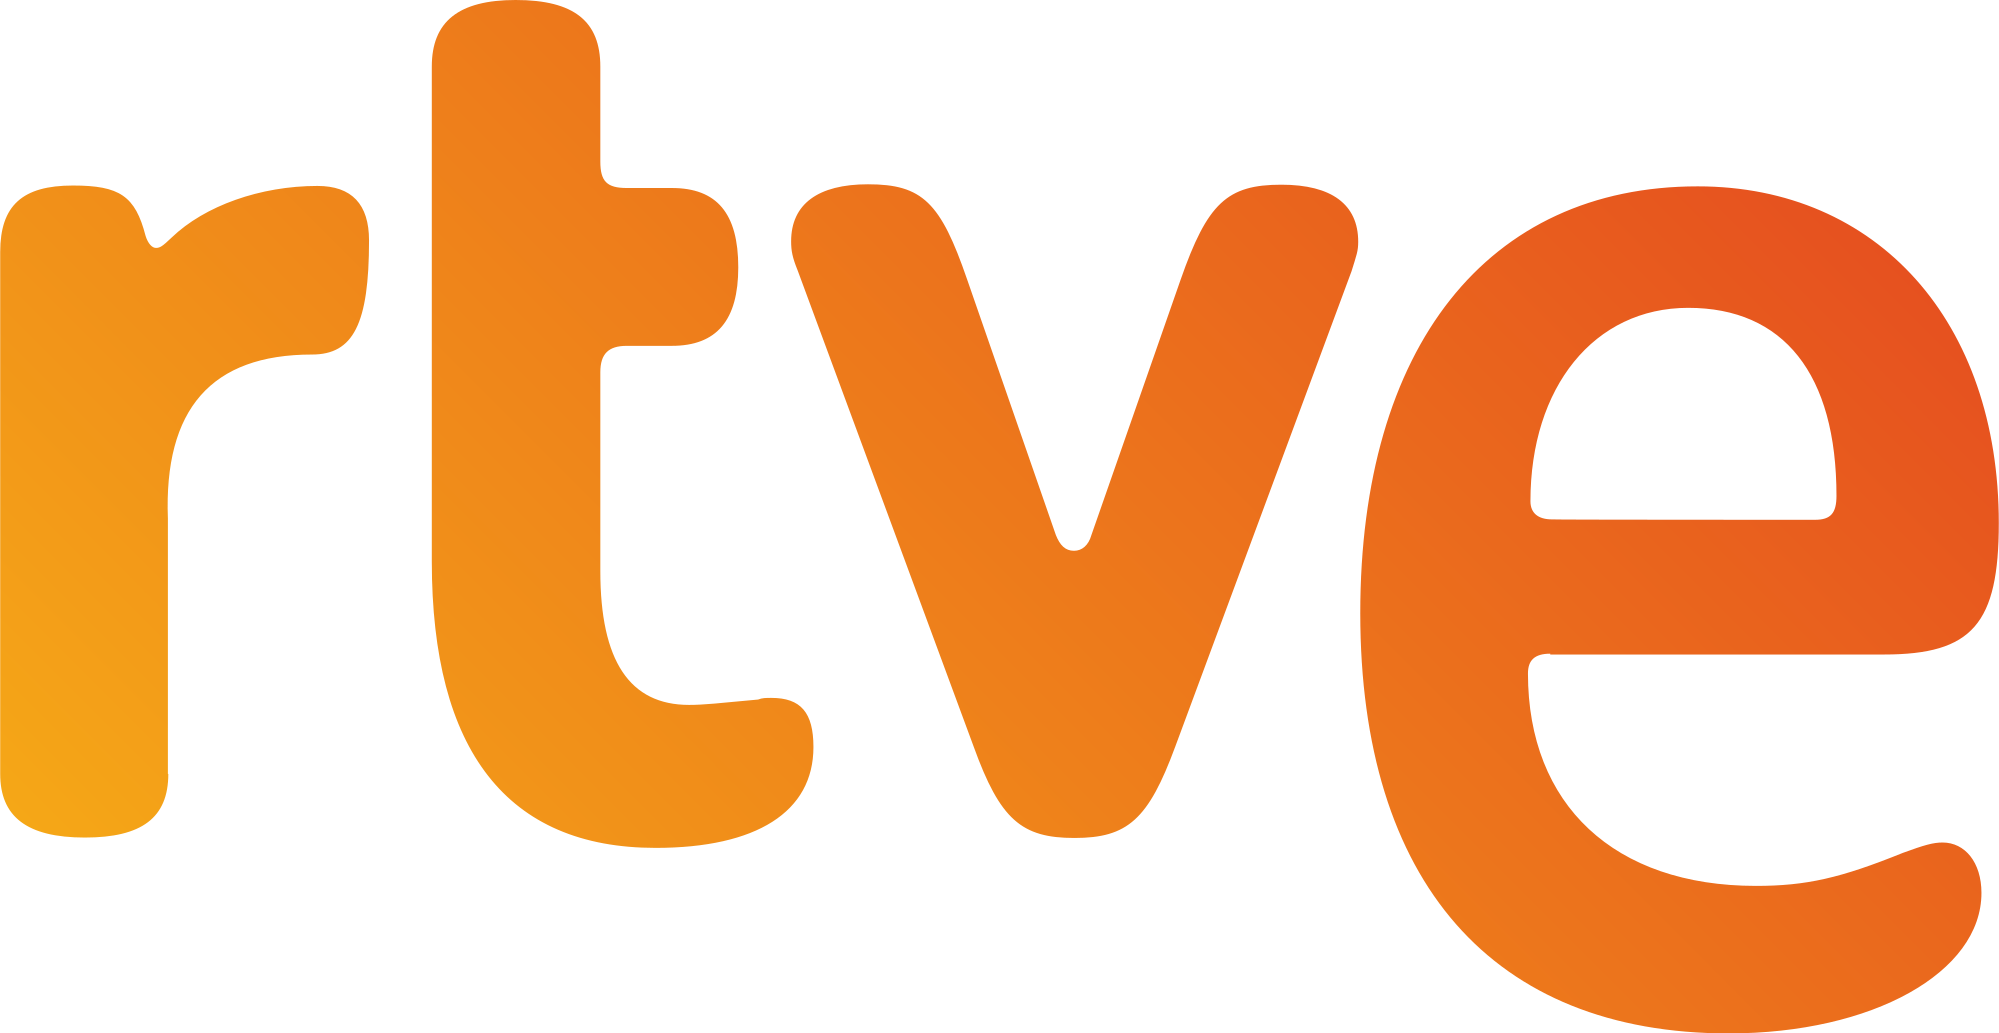 RTVE - company